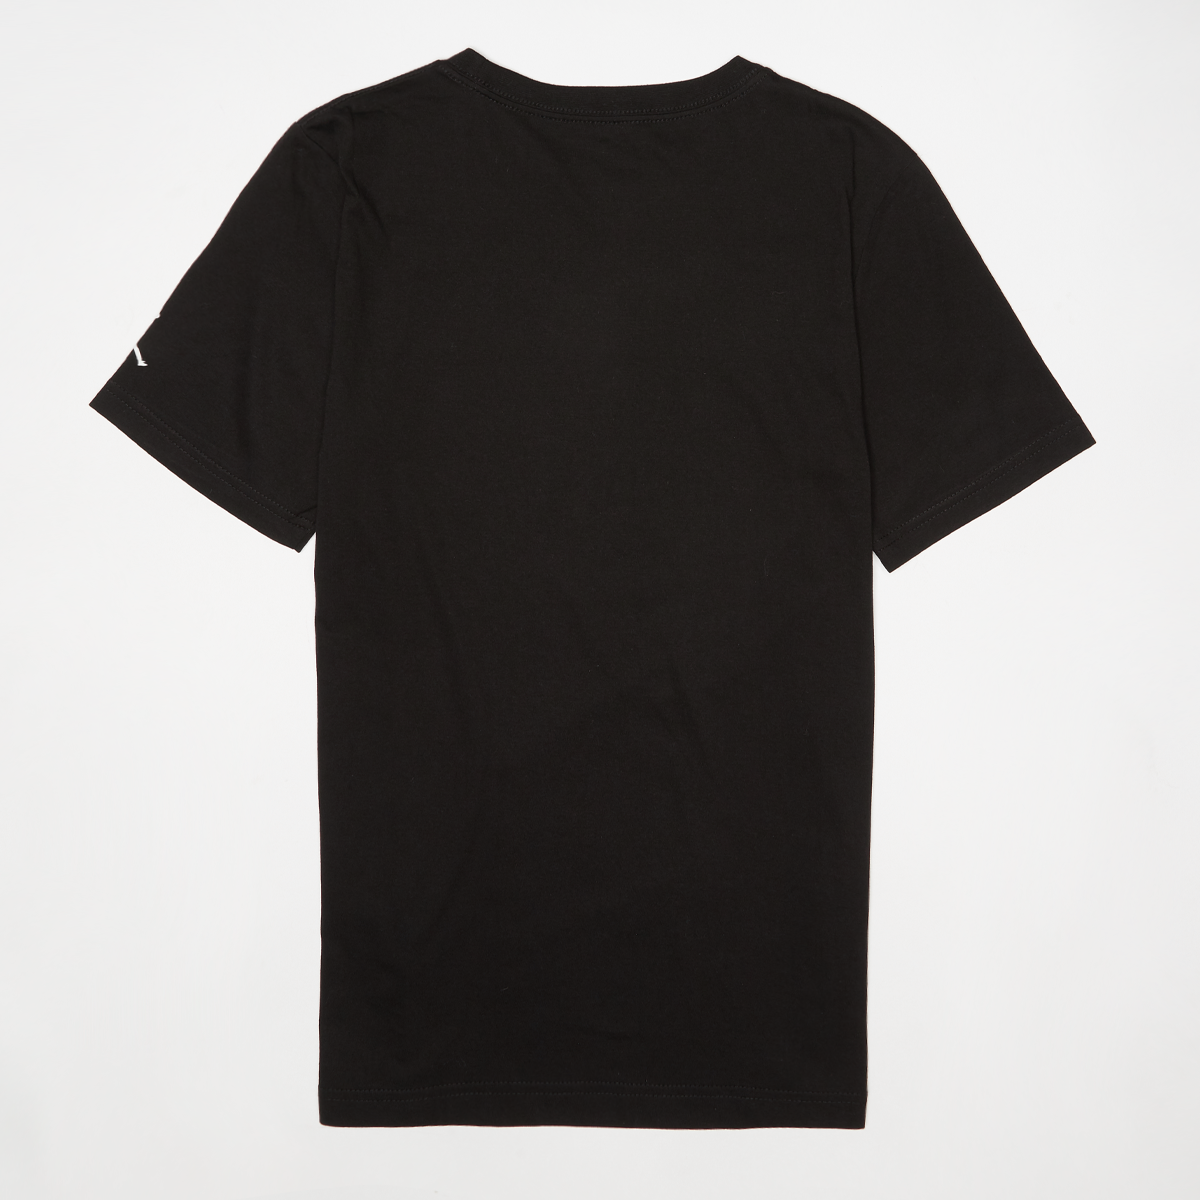 Jordan Air 4 Flight Reimagined Short Sleeve Tee T-shirts Kids black maat: 128 beschikbare maaten:128